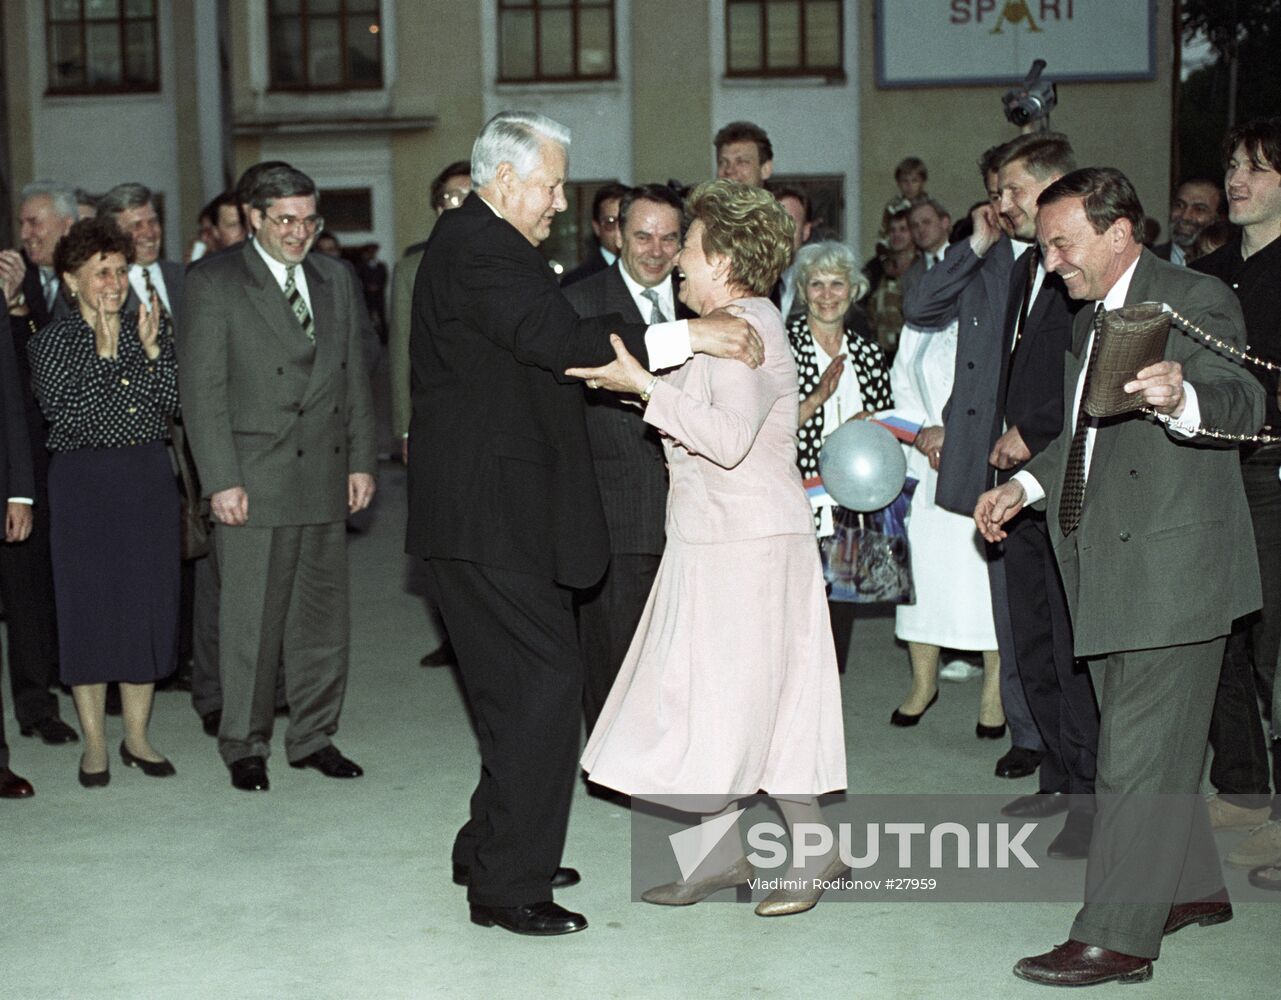 YELTSIN WIFE DANCE MEETING NOVOSIBIRSK